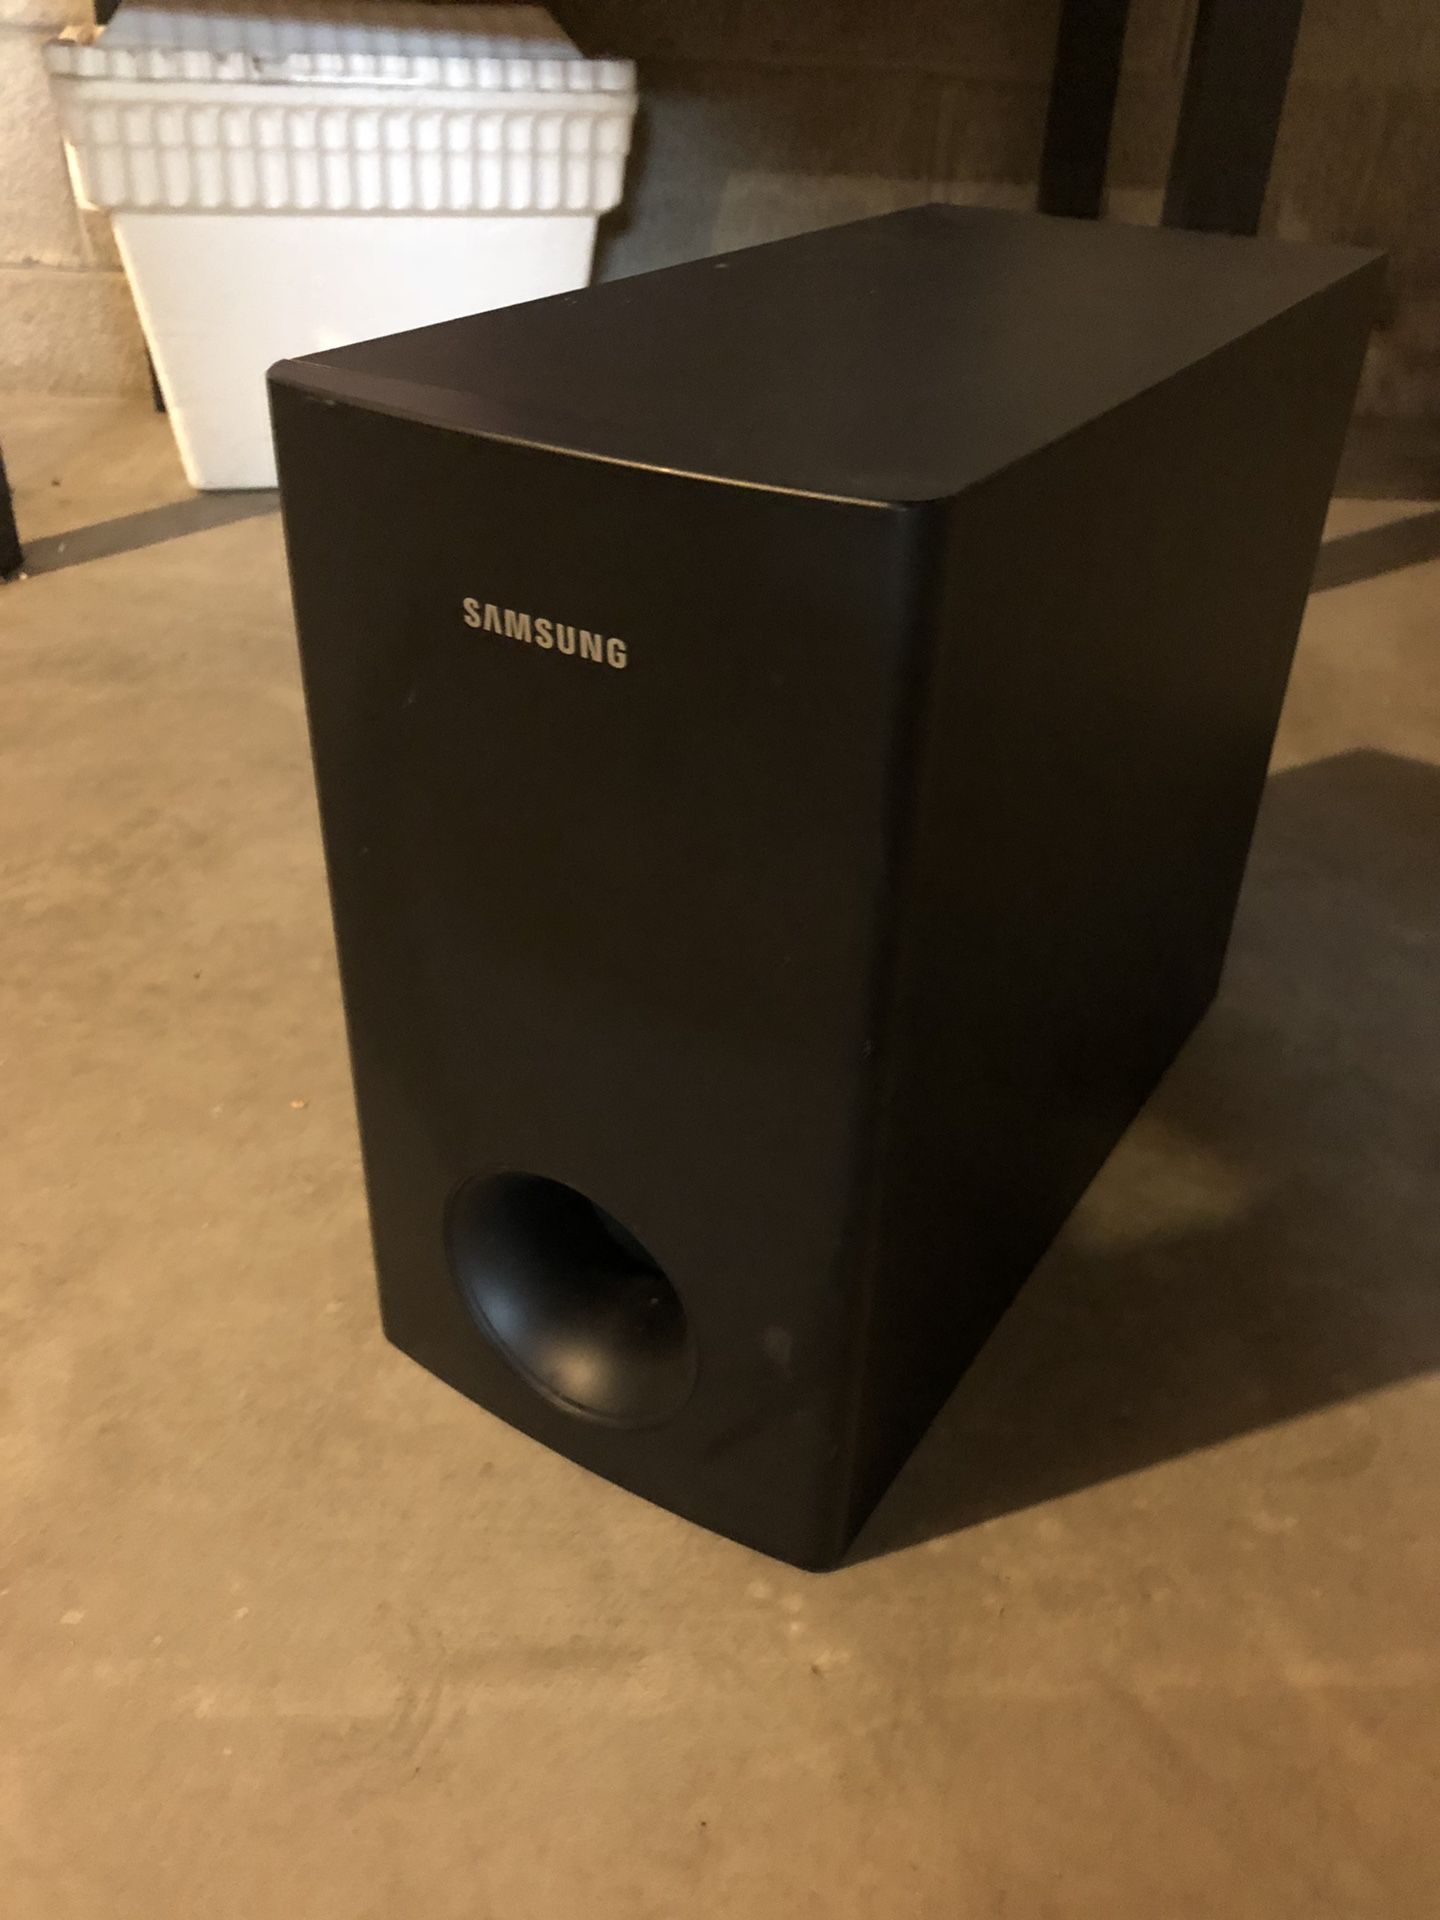 Samsung Surround Sound Speakers